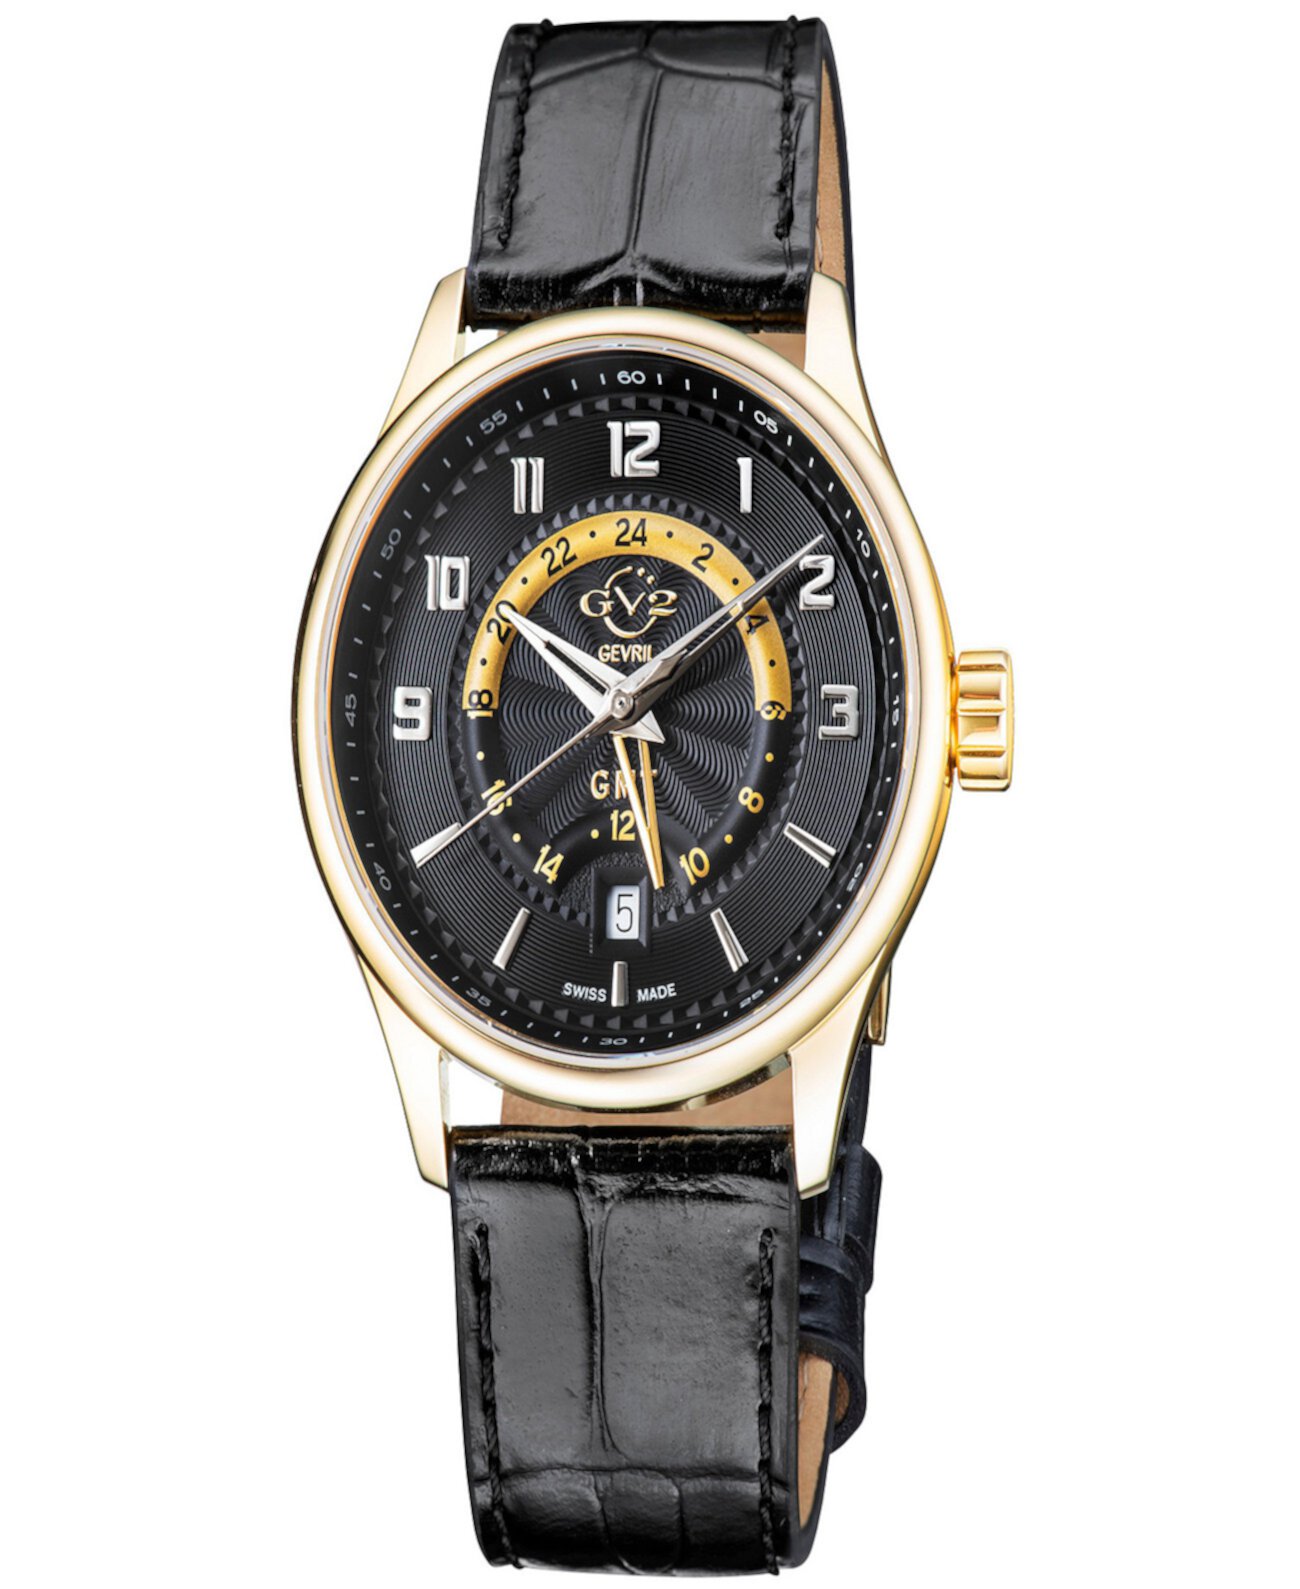 Мужские часы Giromondo швейцарские кварцевые с черным ремешком из натуральной кожи, 42 мм Gevril